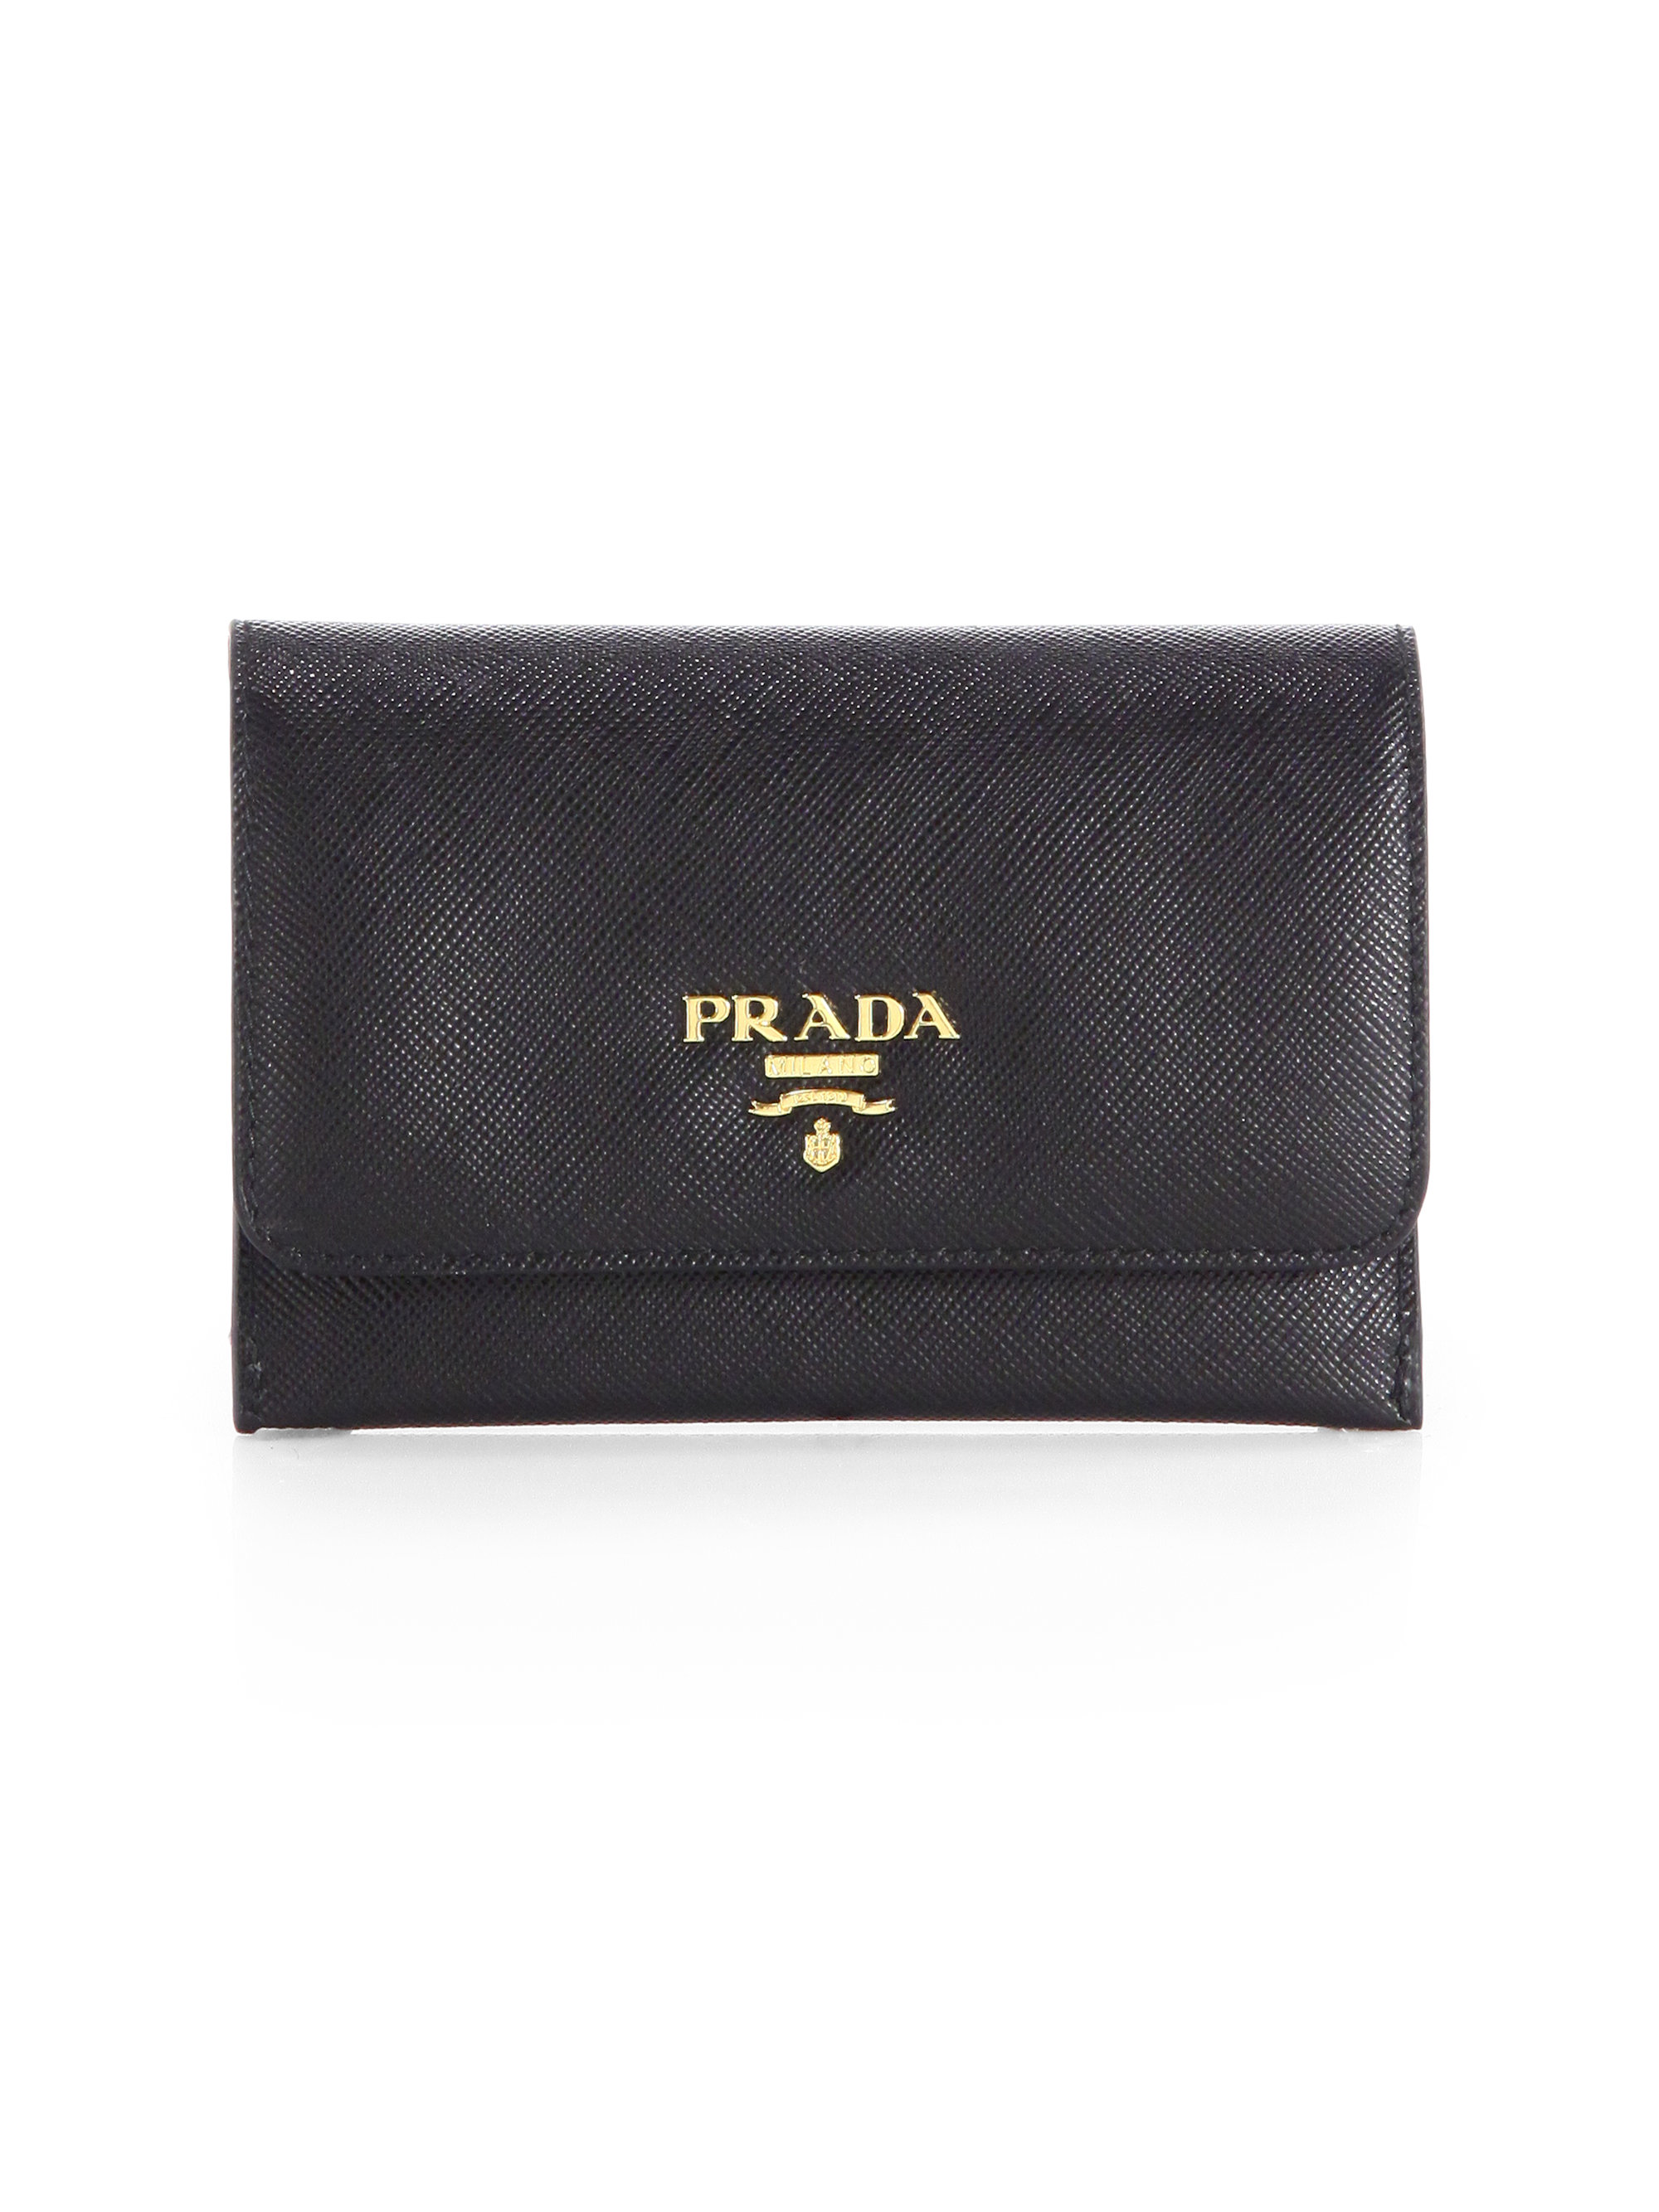 Prada Saffiano Credit Card Case in Black (PAPAYA) | Lyst